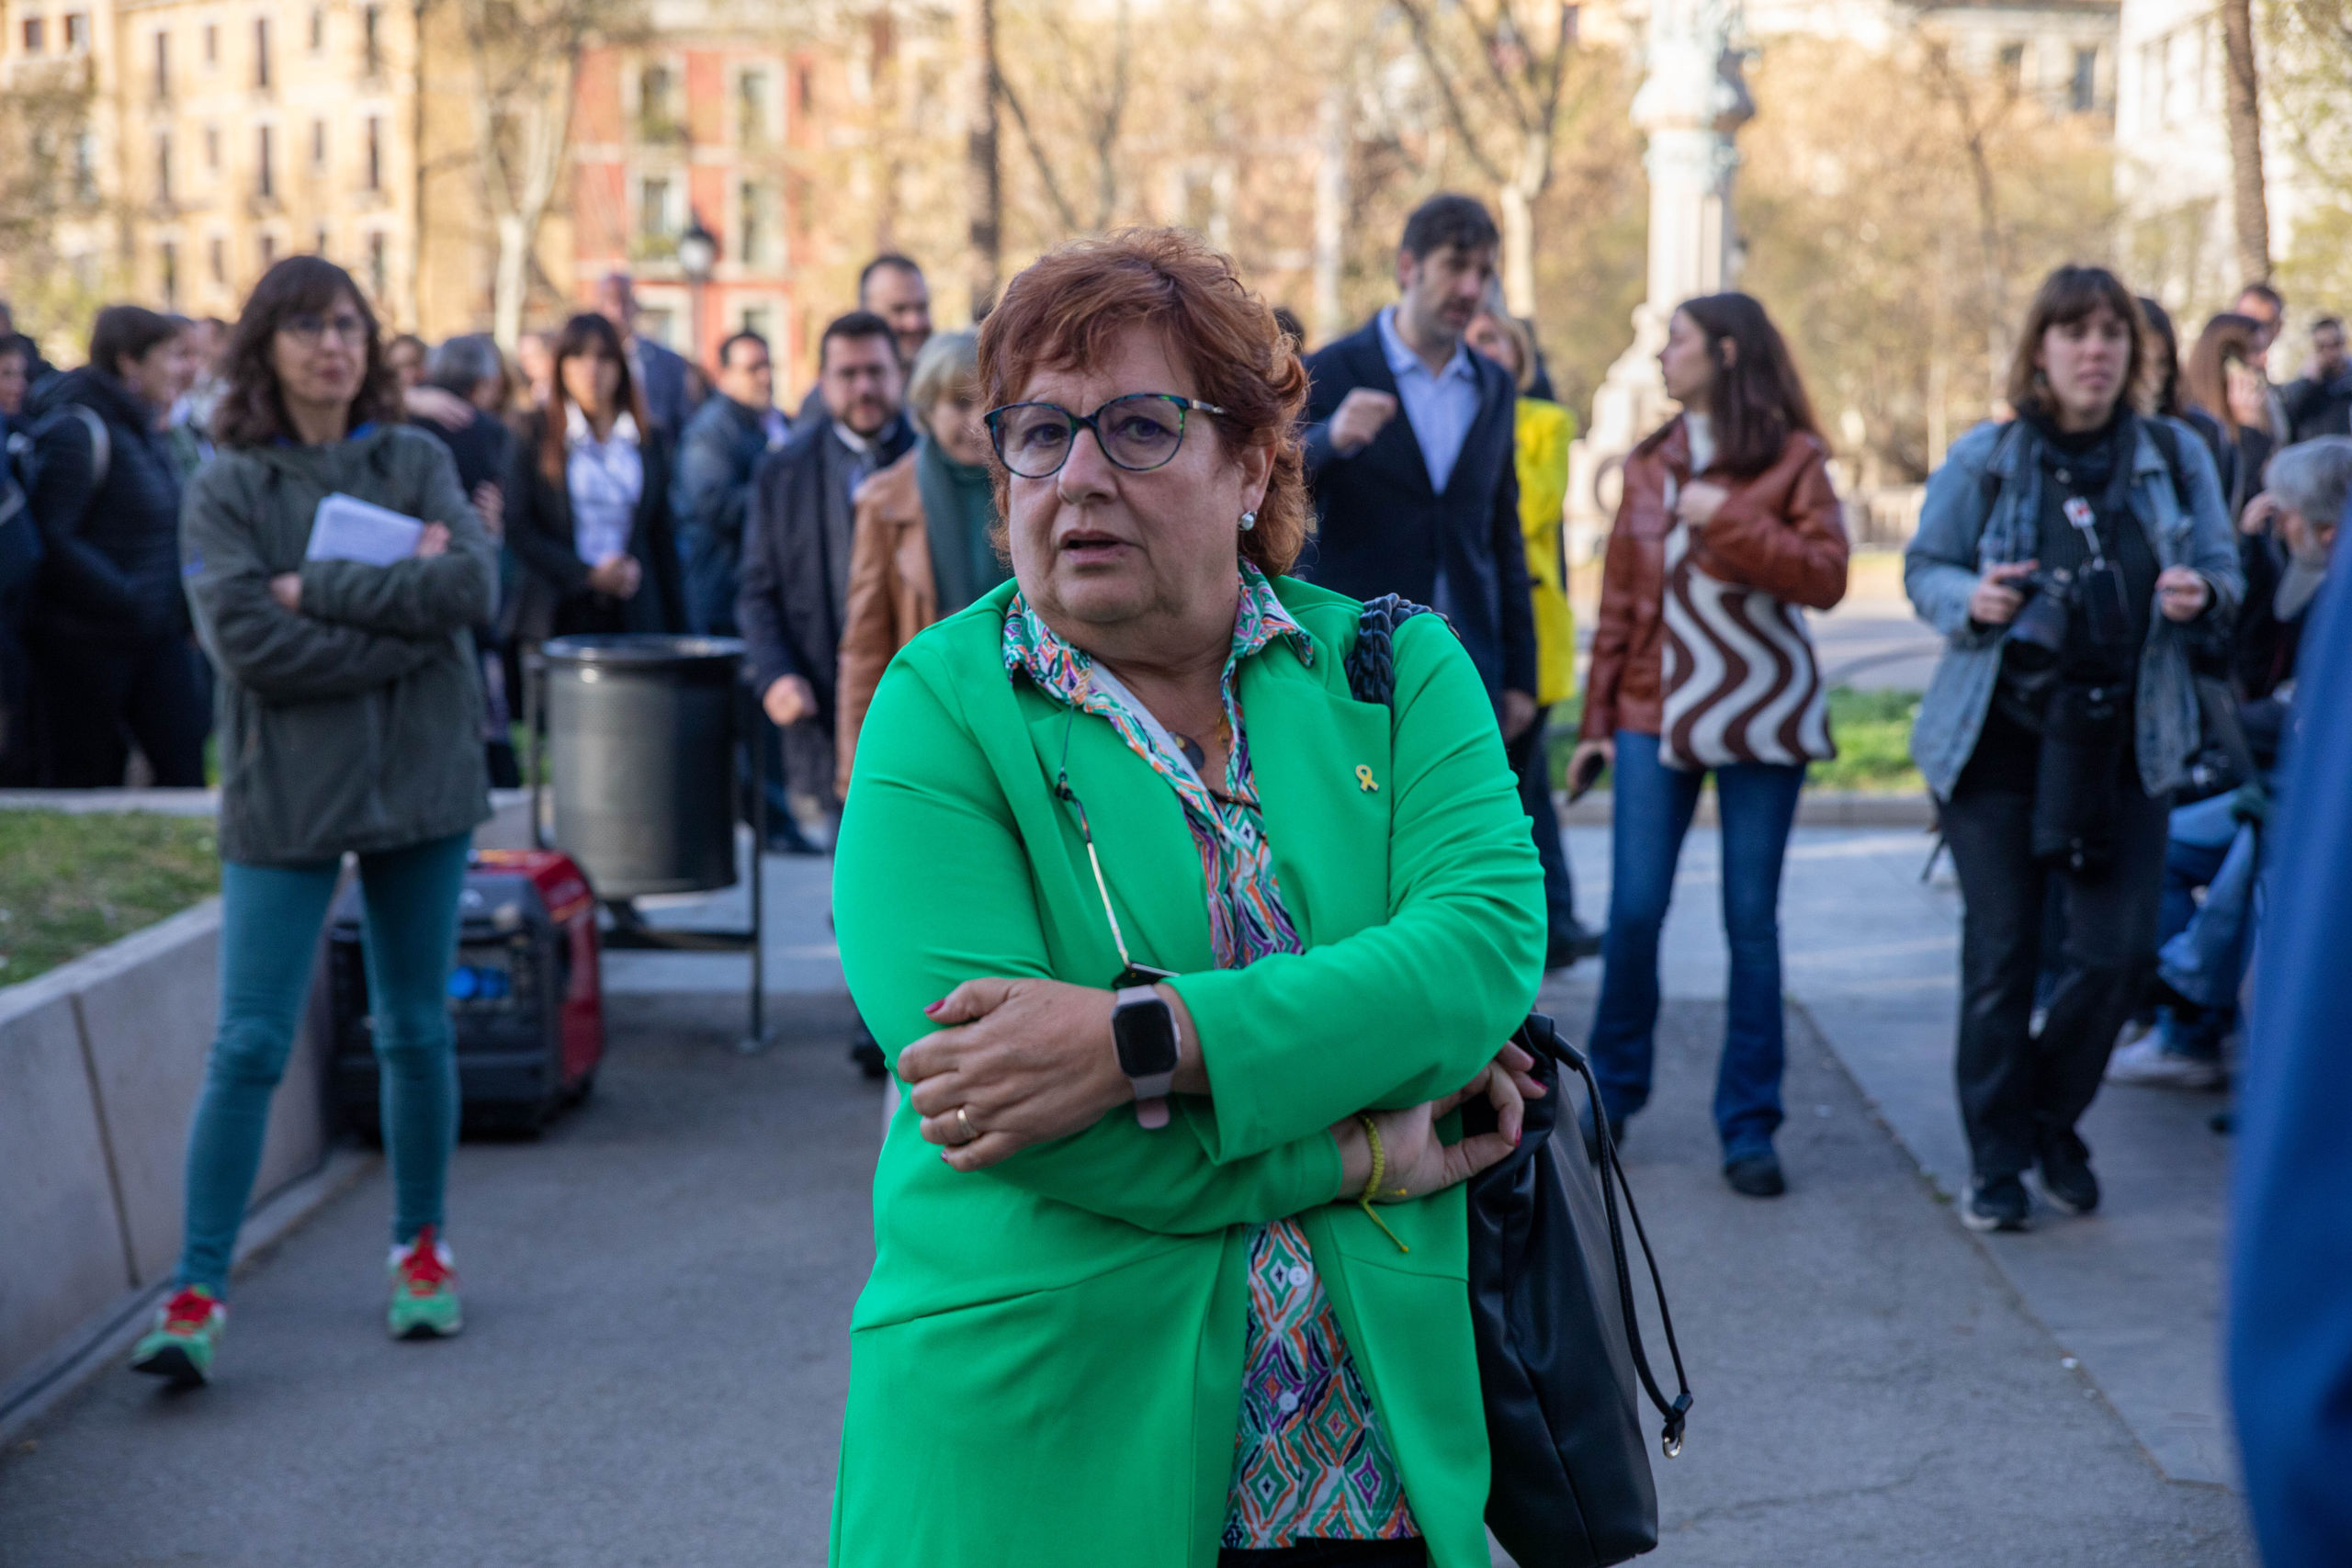 Una golpista de ERC propone "eliminar" a los partidos cuyos candidatos hablan en español